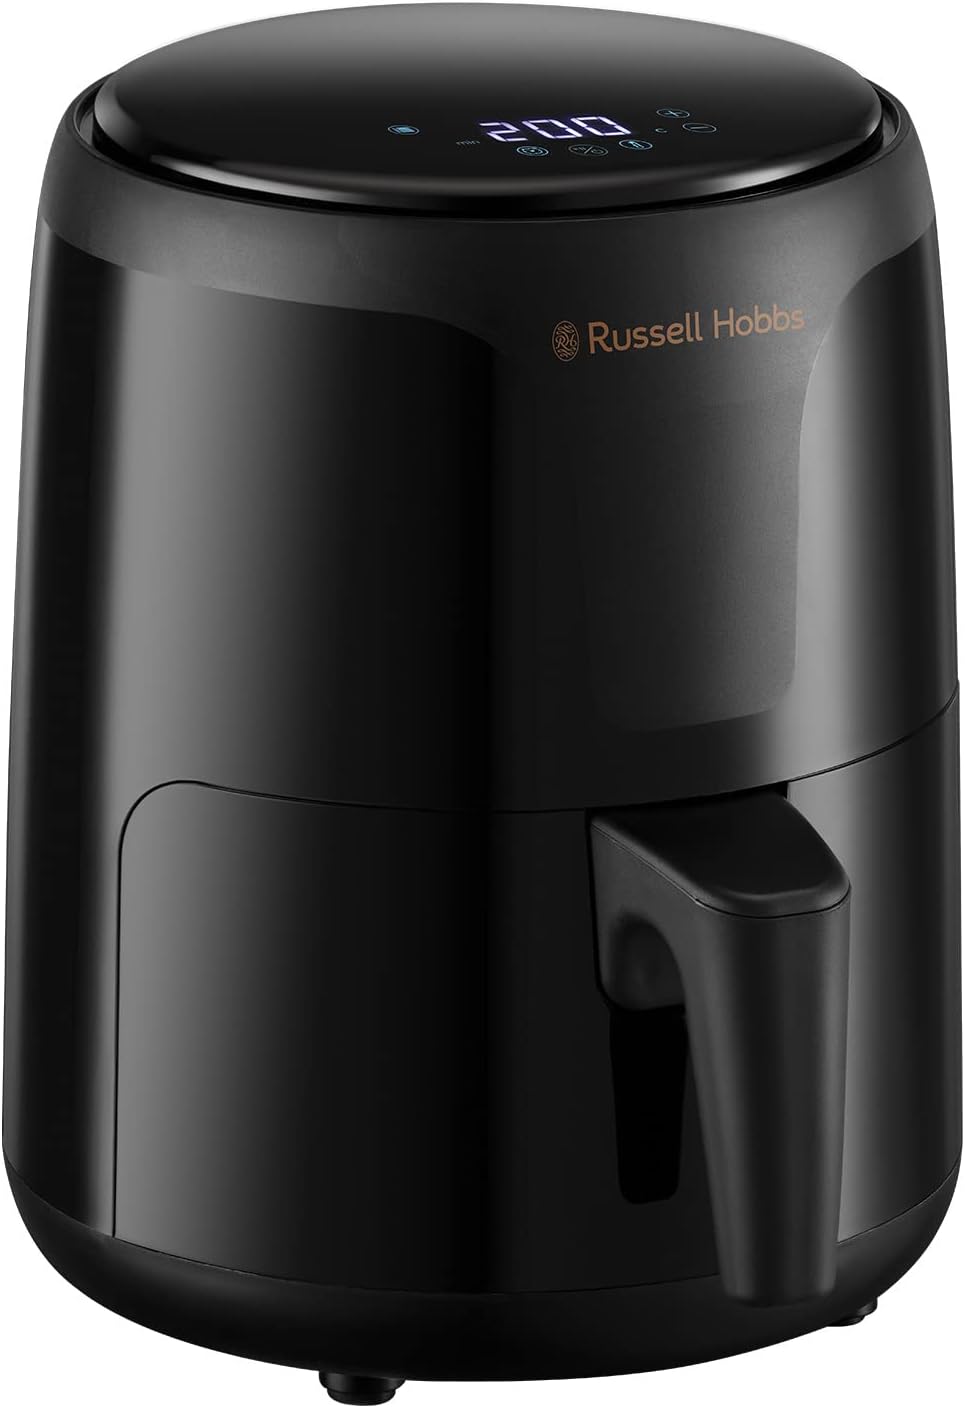 Russell Hobbs 26500 SatisFry Small Digital Air Fryer